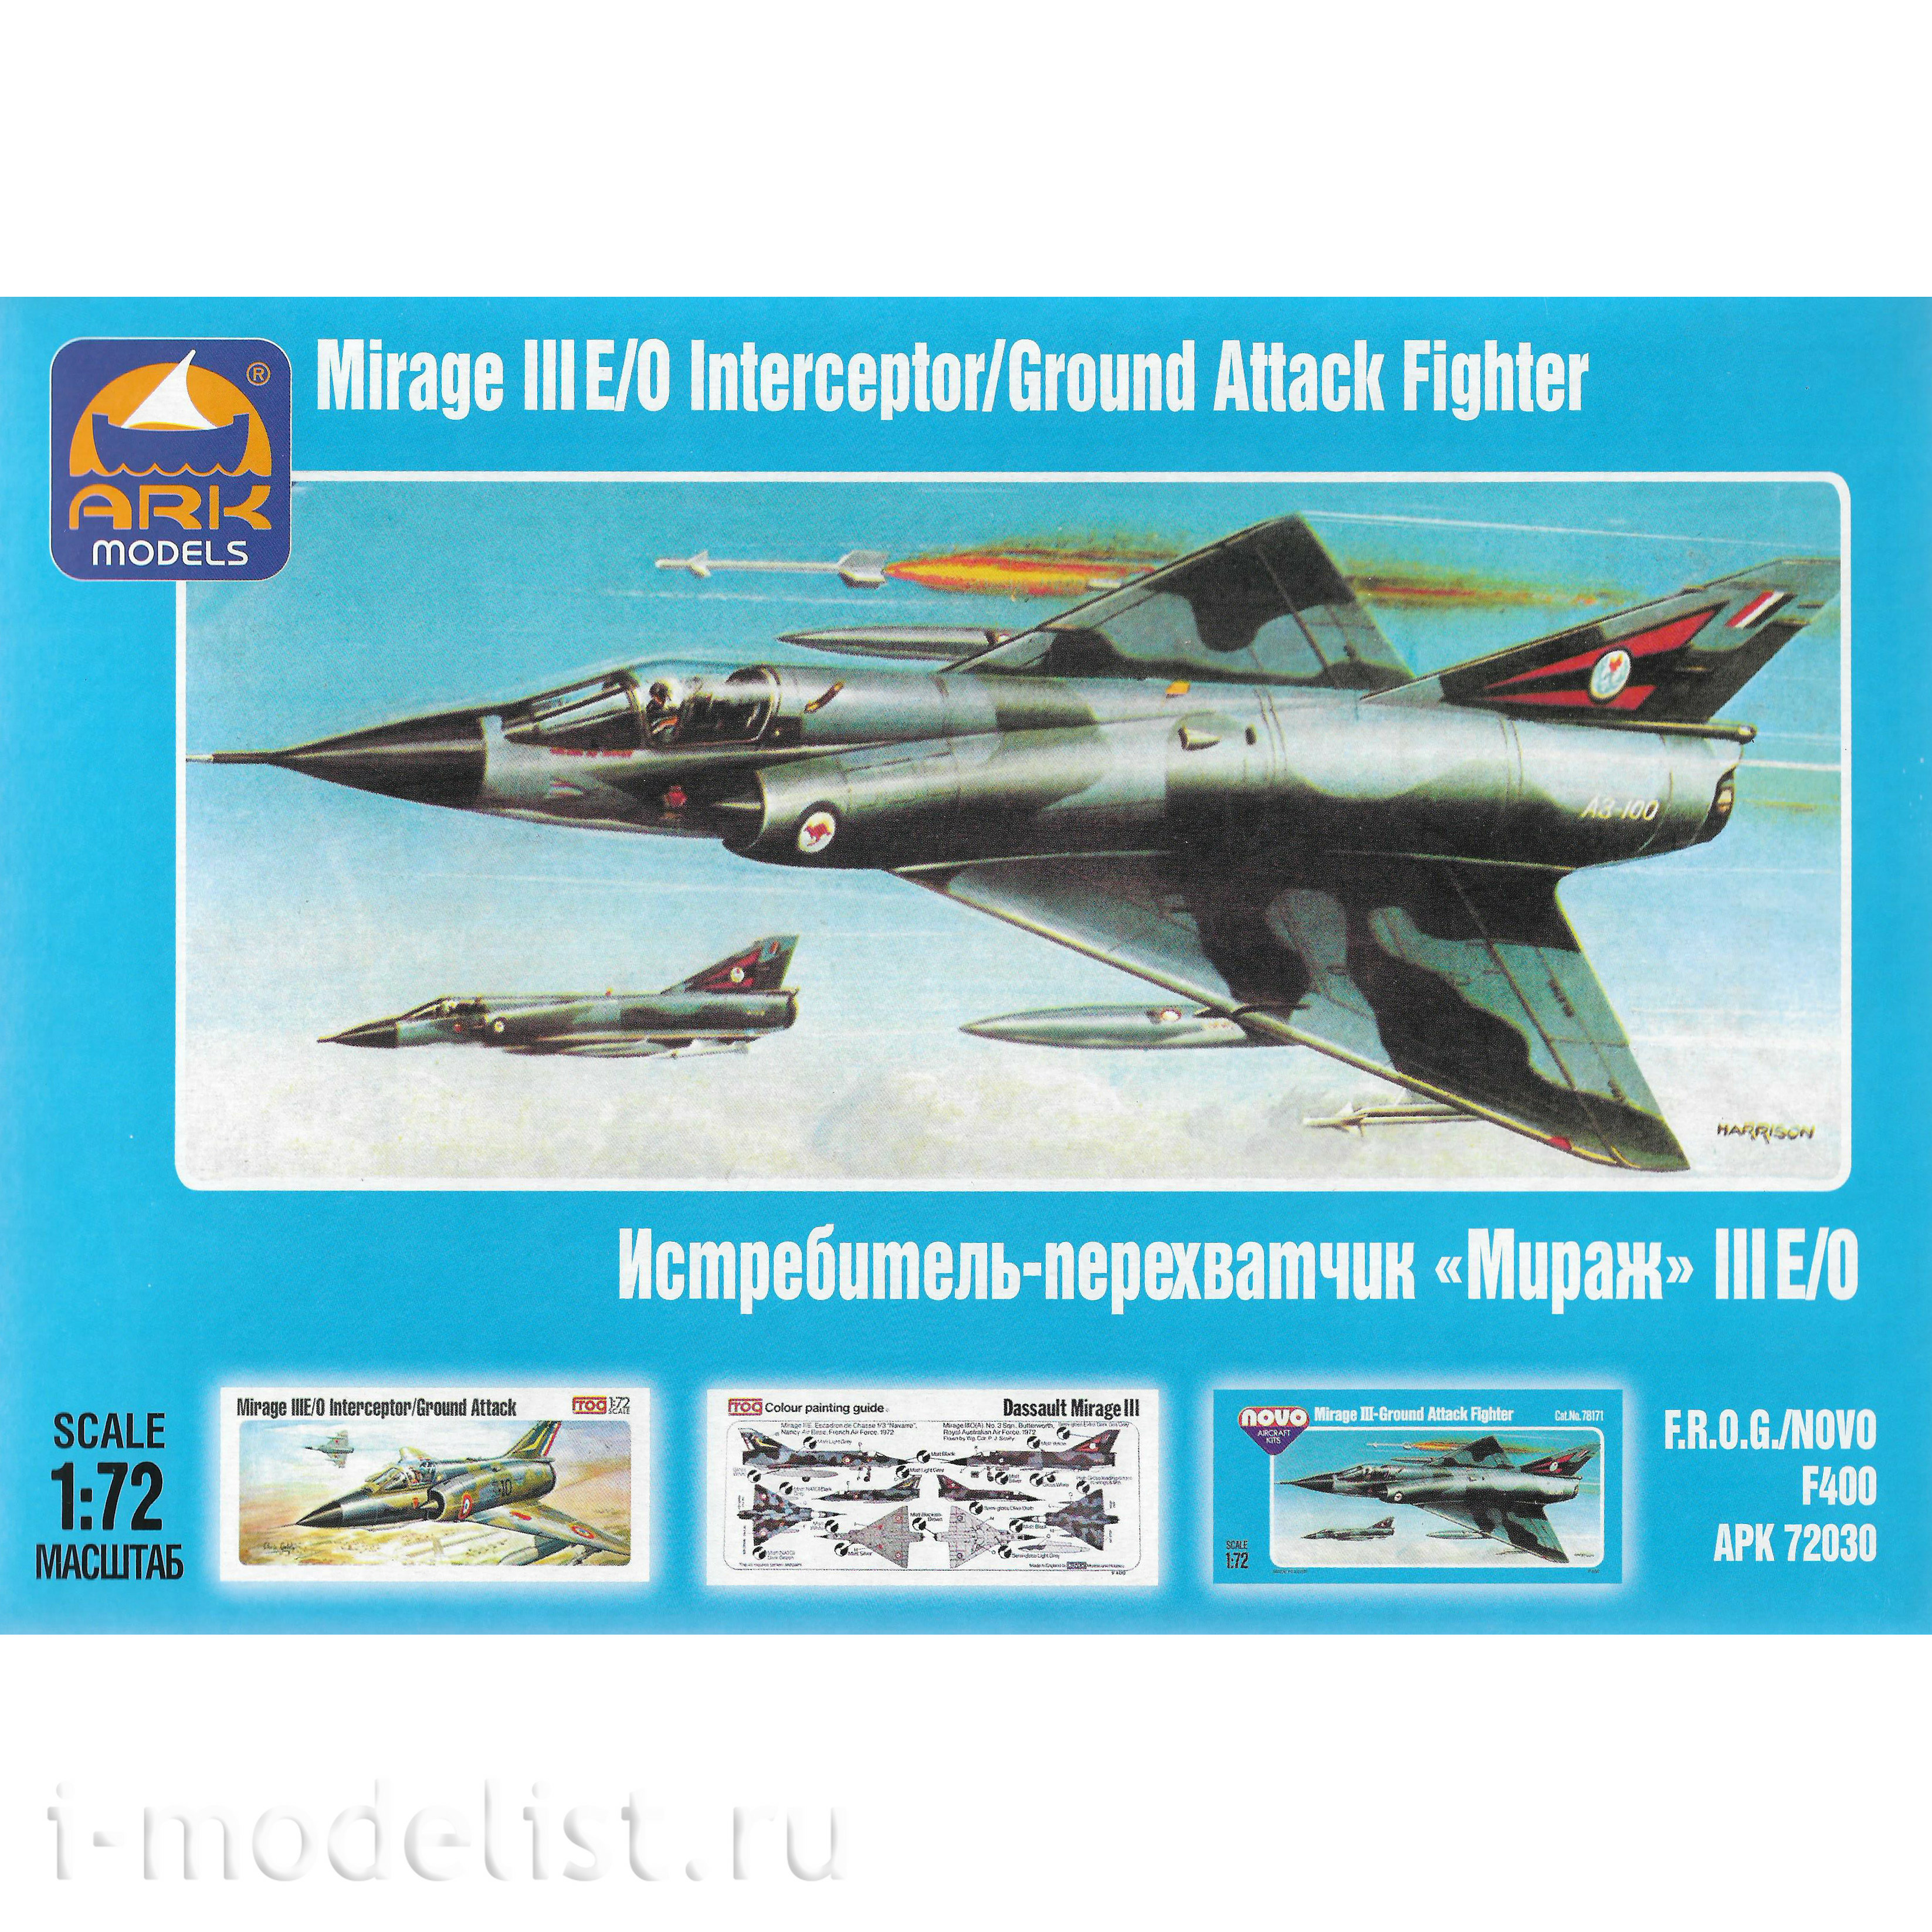 72030 ARK-models 1/72 Mirage III interceptor Fighter